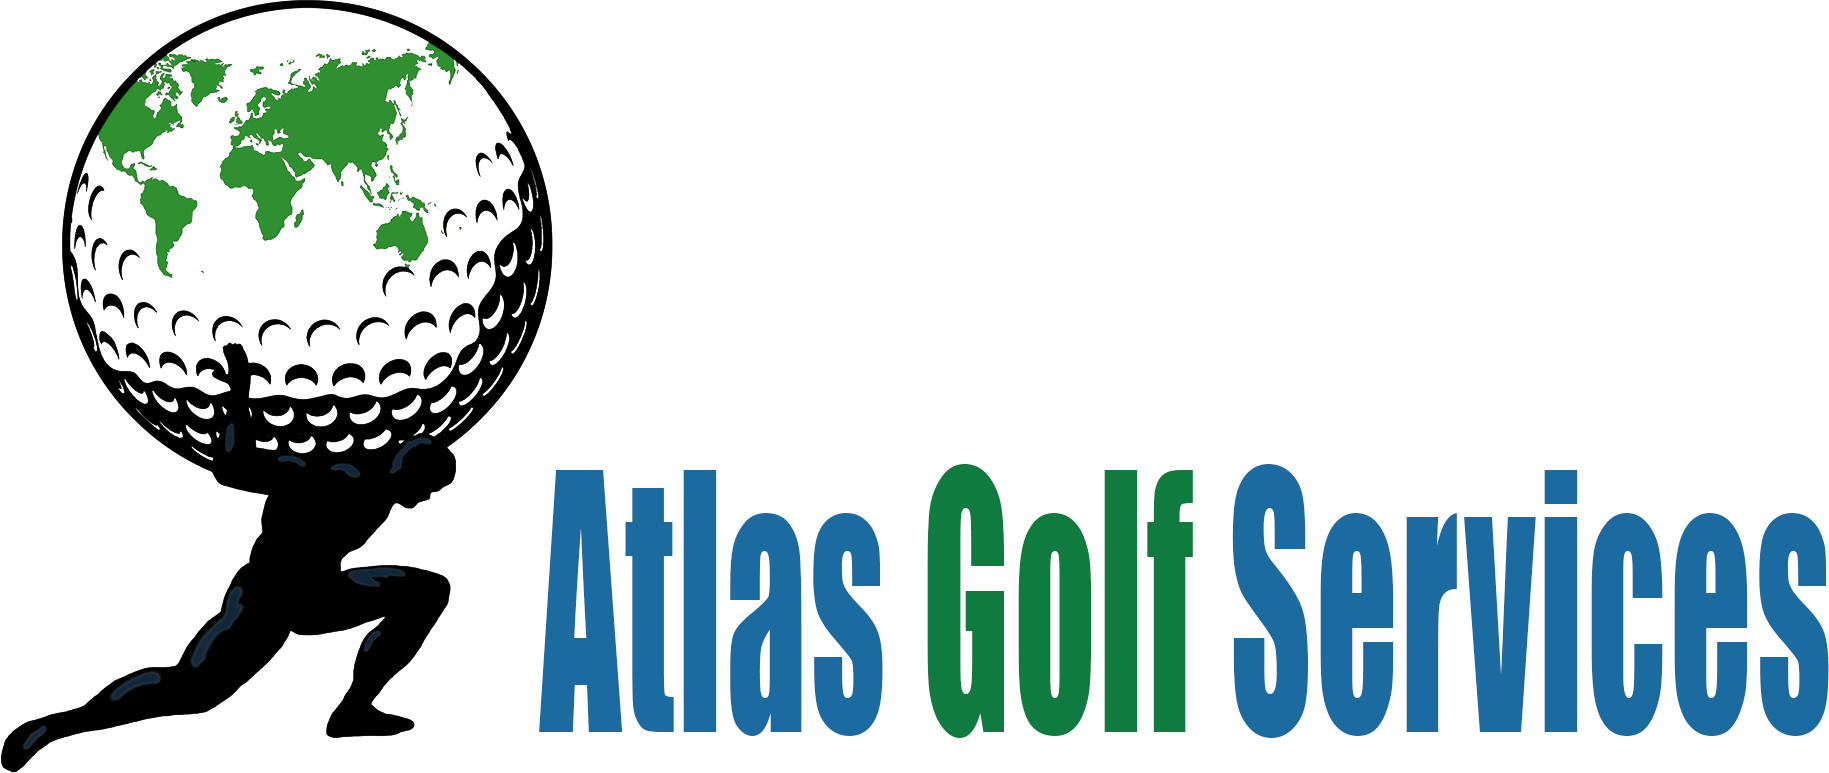 Atlas Golf Services